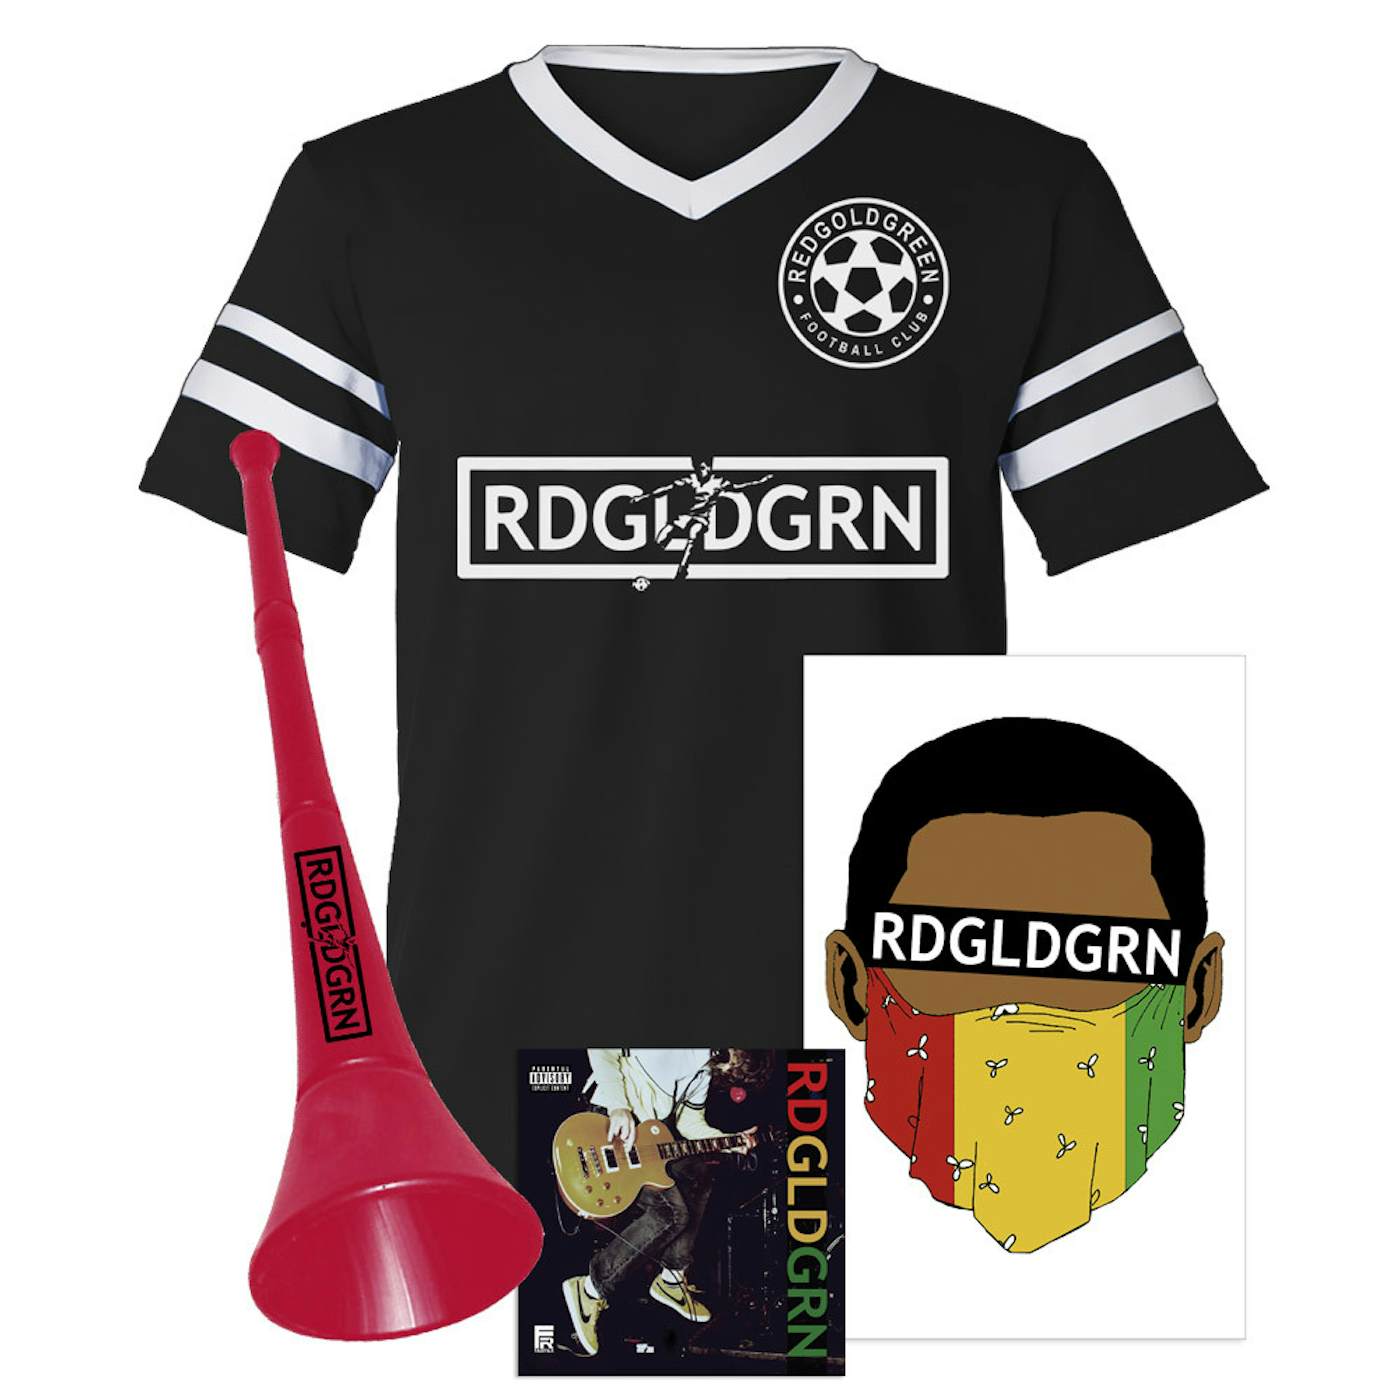 RDGLDGRN "Football Club" Album Bundle